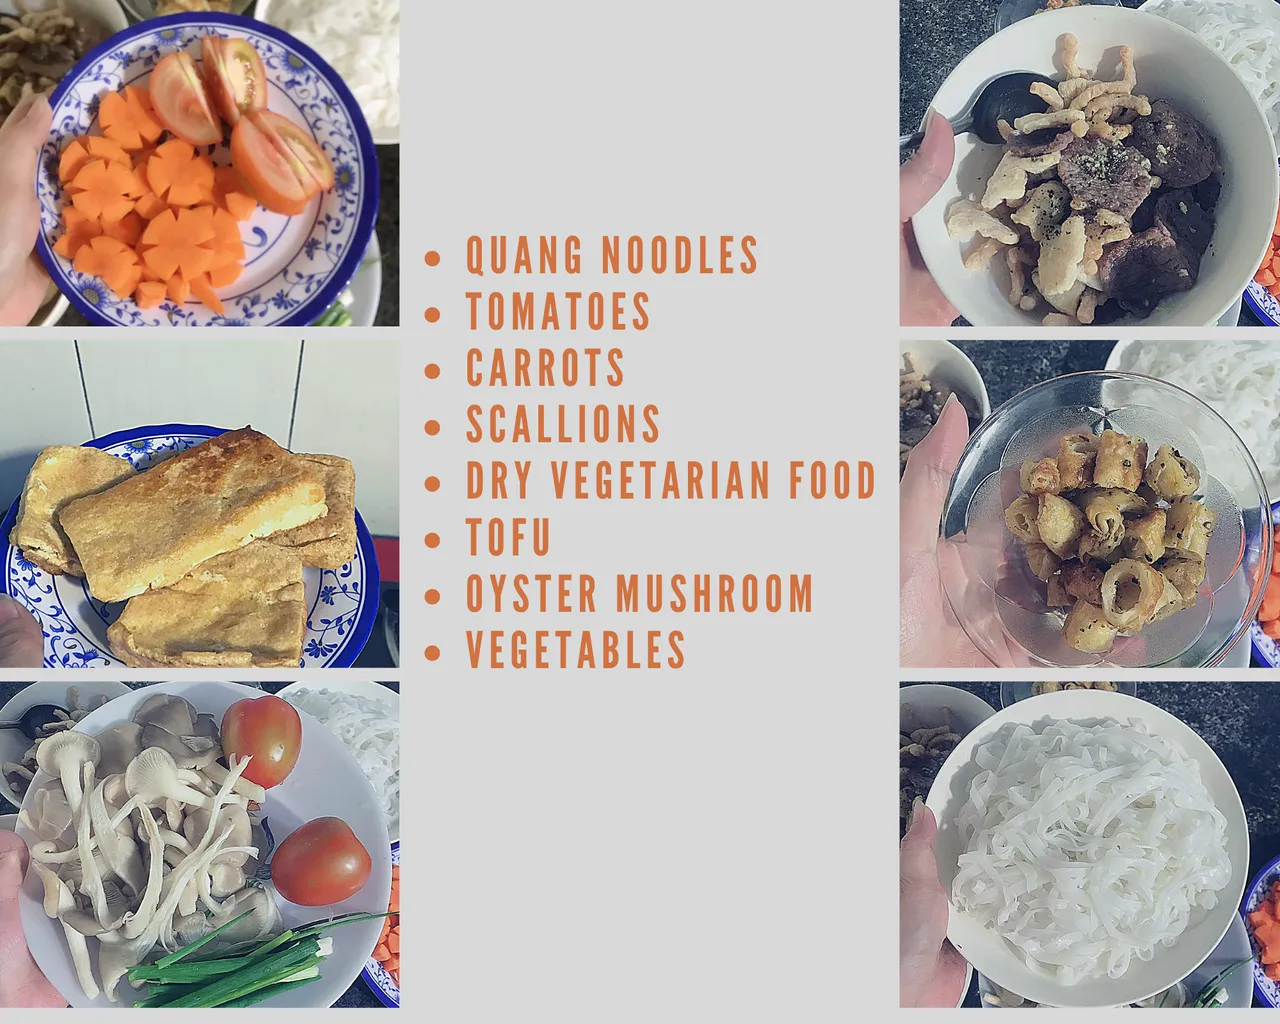 Quang noodles 4j.png